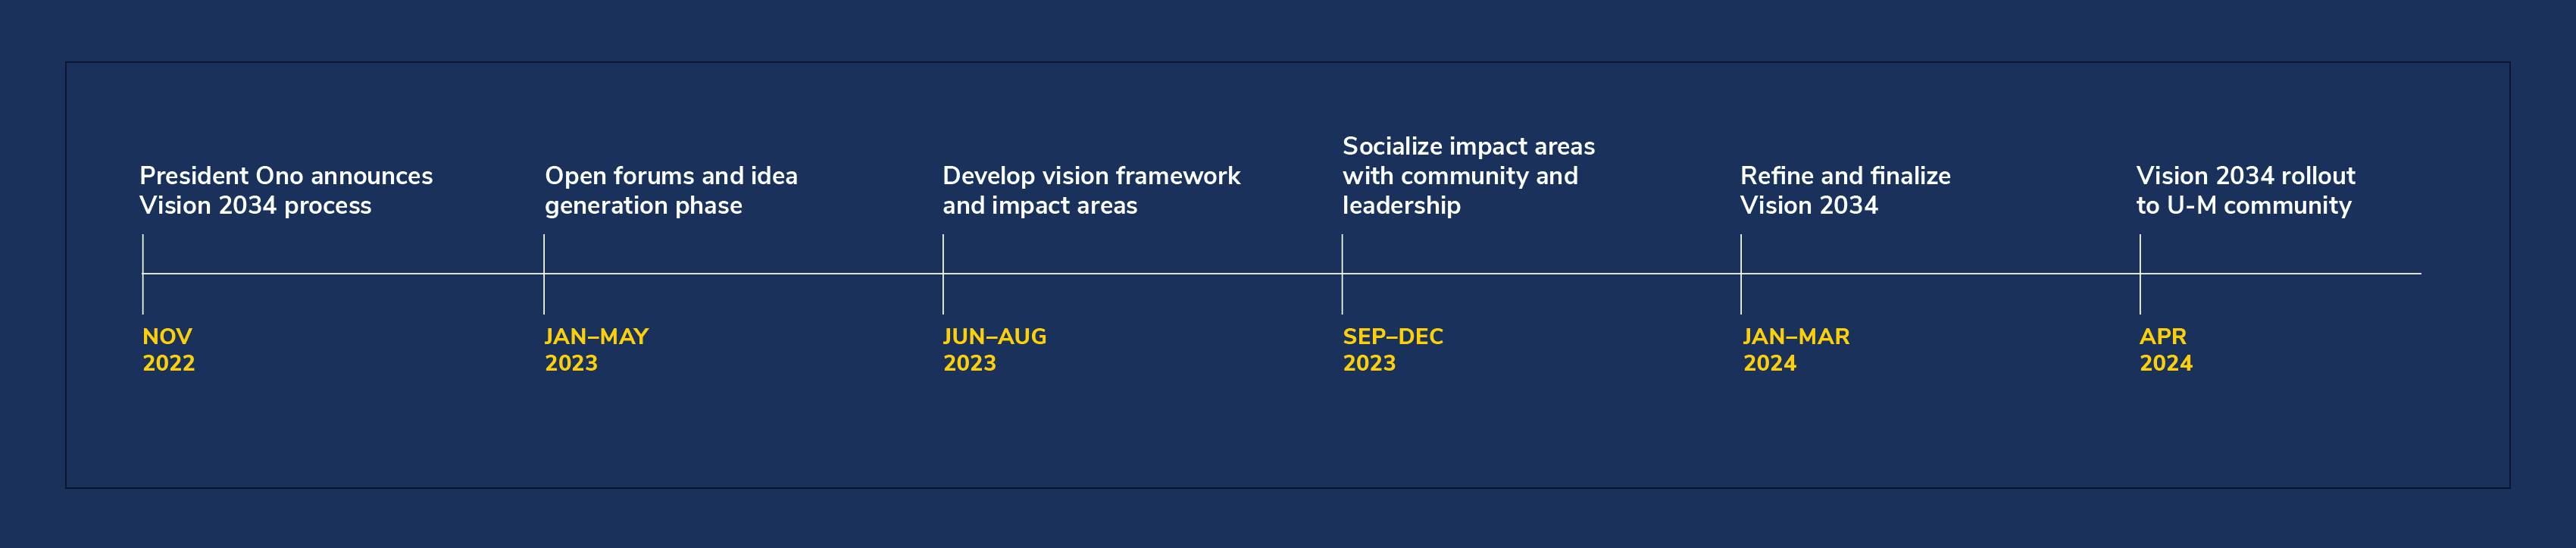 Timeline of UM's Vision 2034